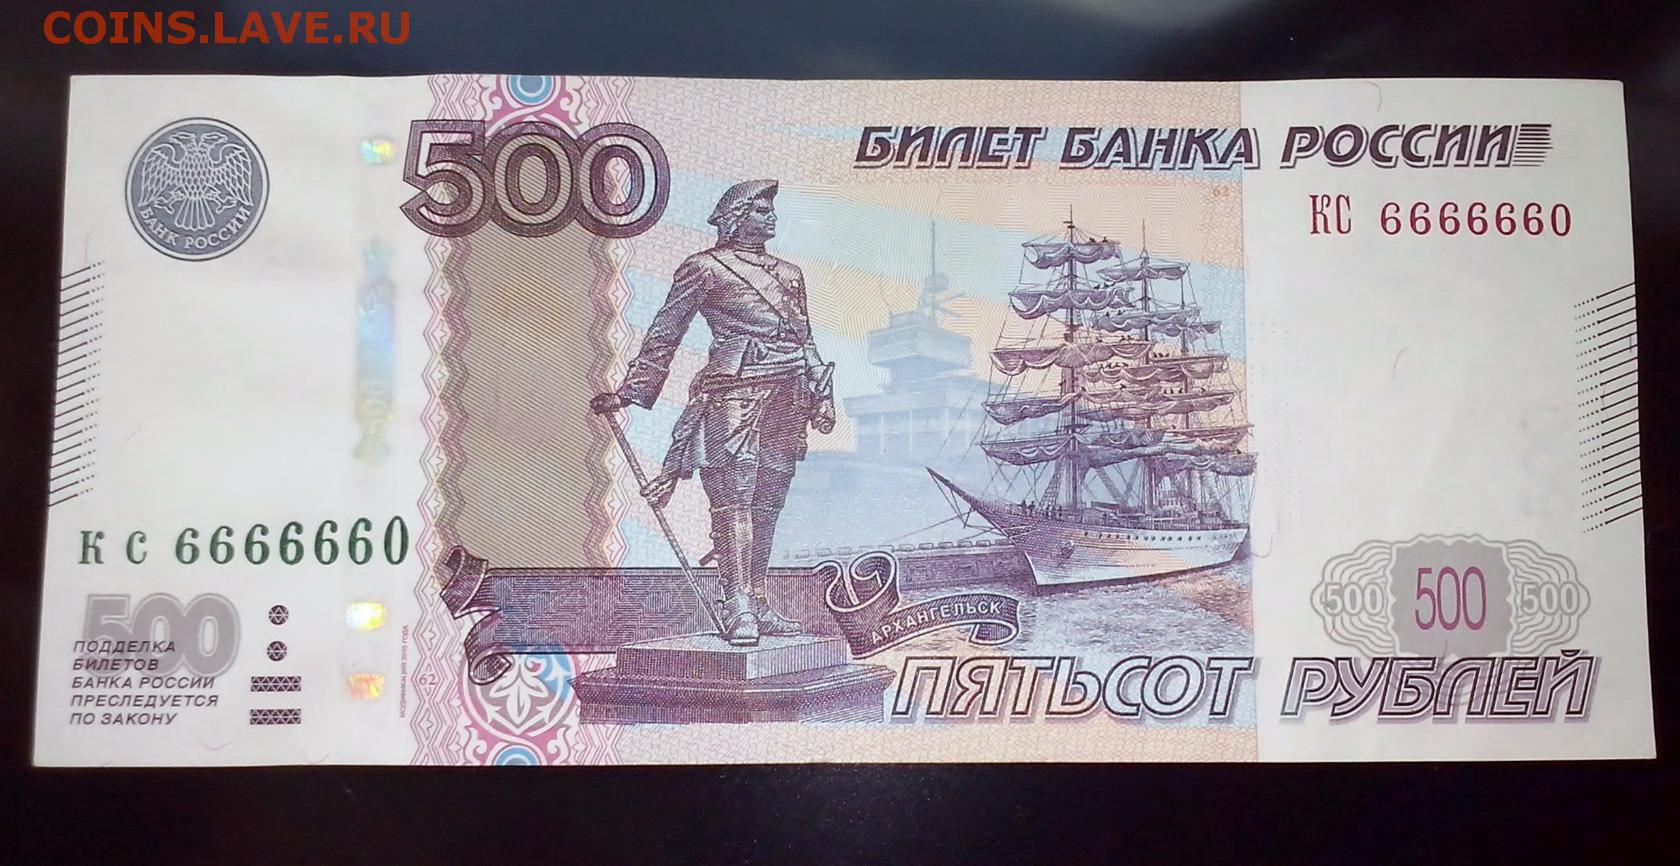 500 рублей номер. 500 Рублей. Купюра 500 рублей. Пятьсот рублей. 500 Рублей с 2 сторон.